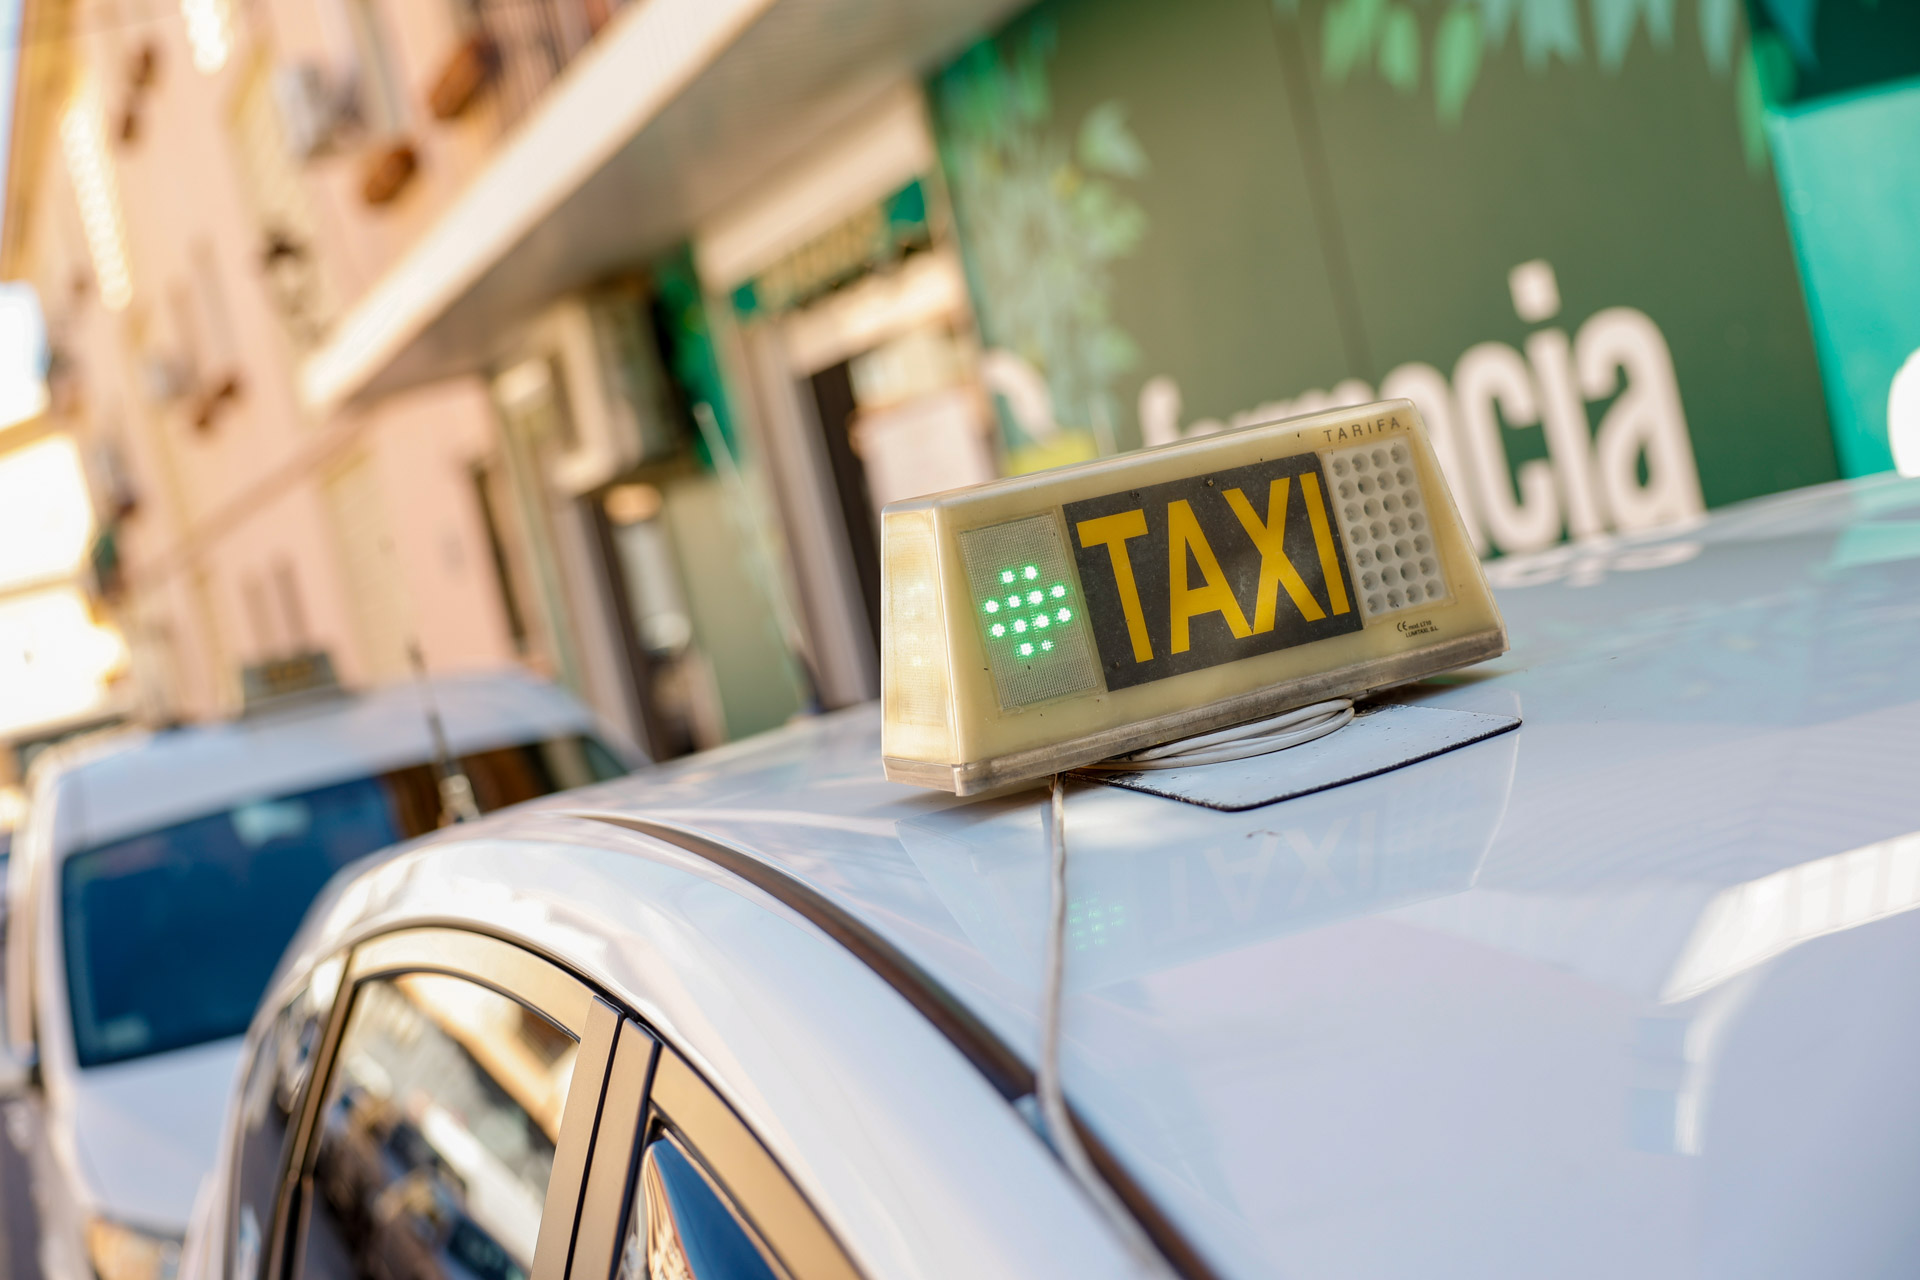 Los Taxis de l’Alfàs del Pi y de l’Albir 24 horas de servicio a través del teléfono 96 585 61 01